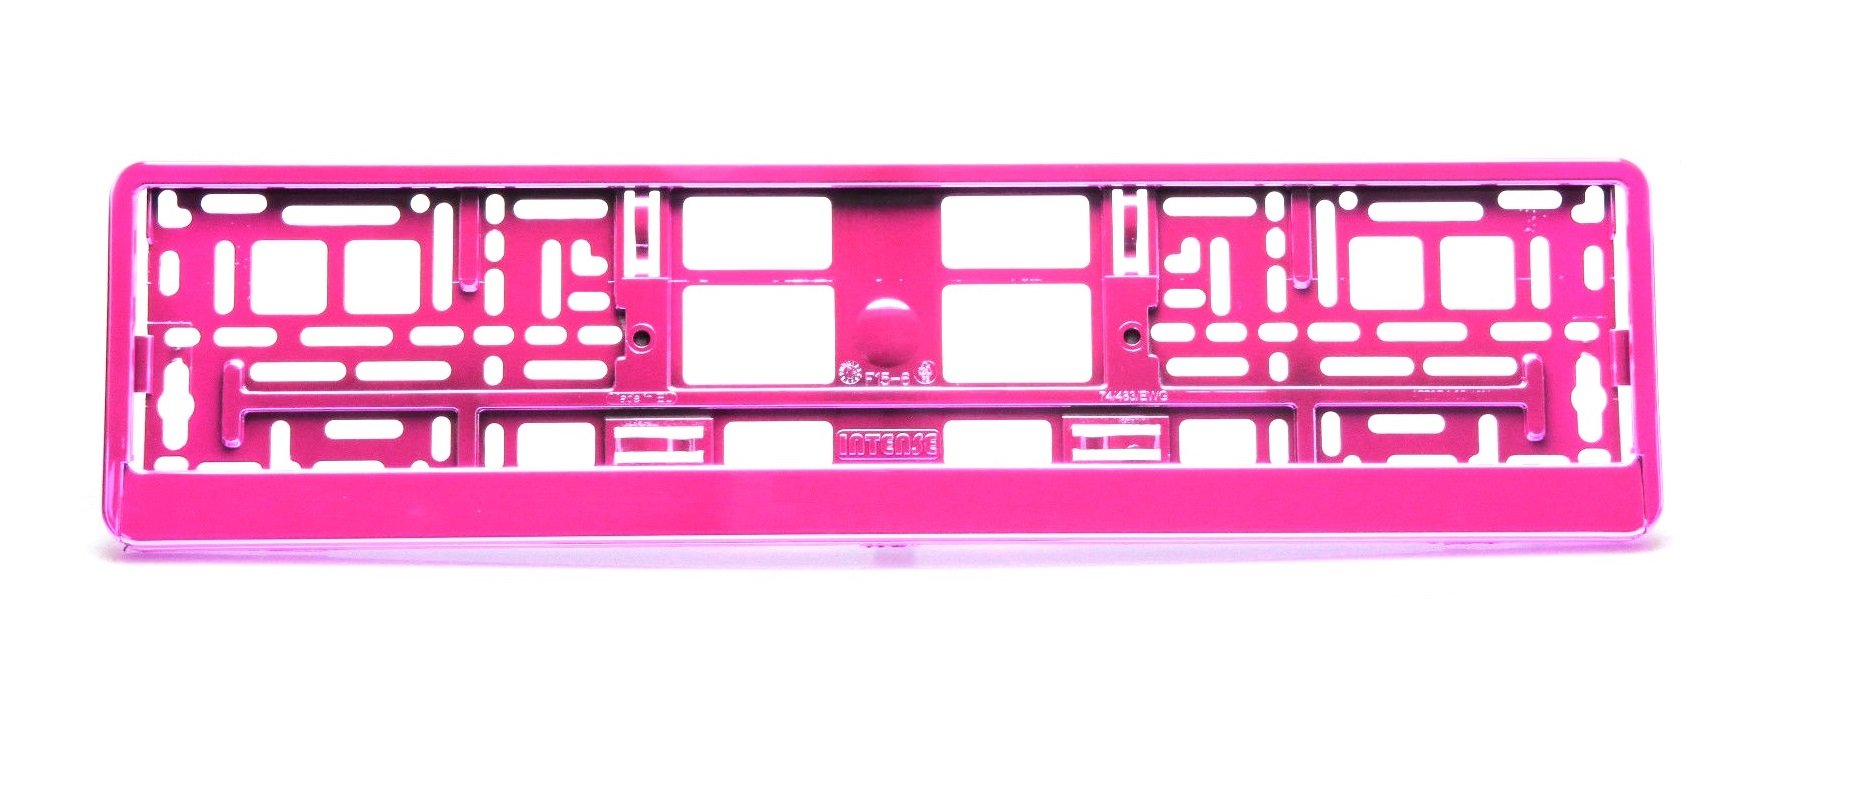 UTAL INTENSE Kennzeichenhalter 74/483/EWG chrom pink von UTAL